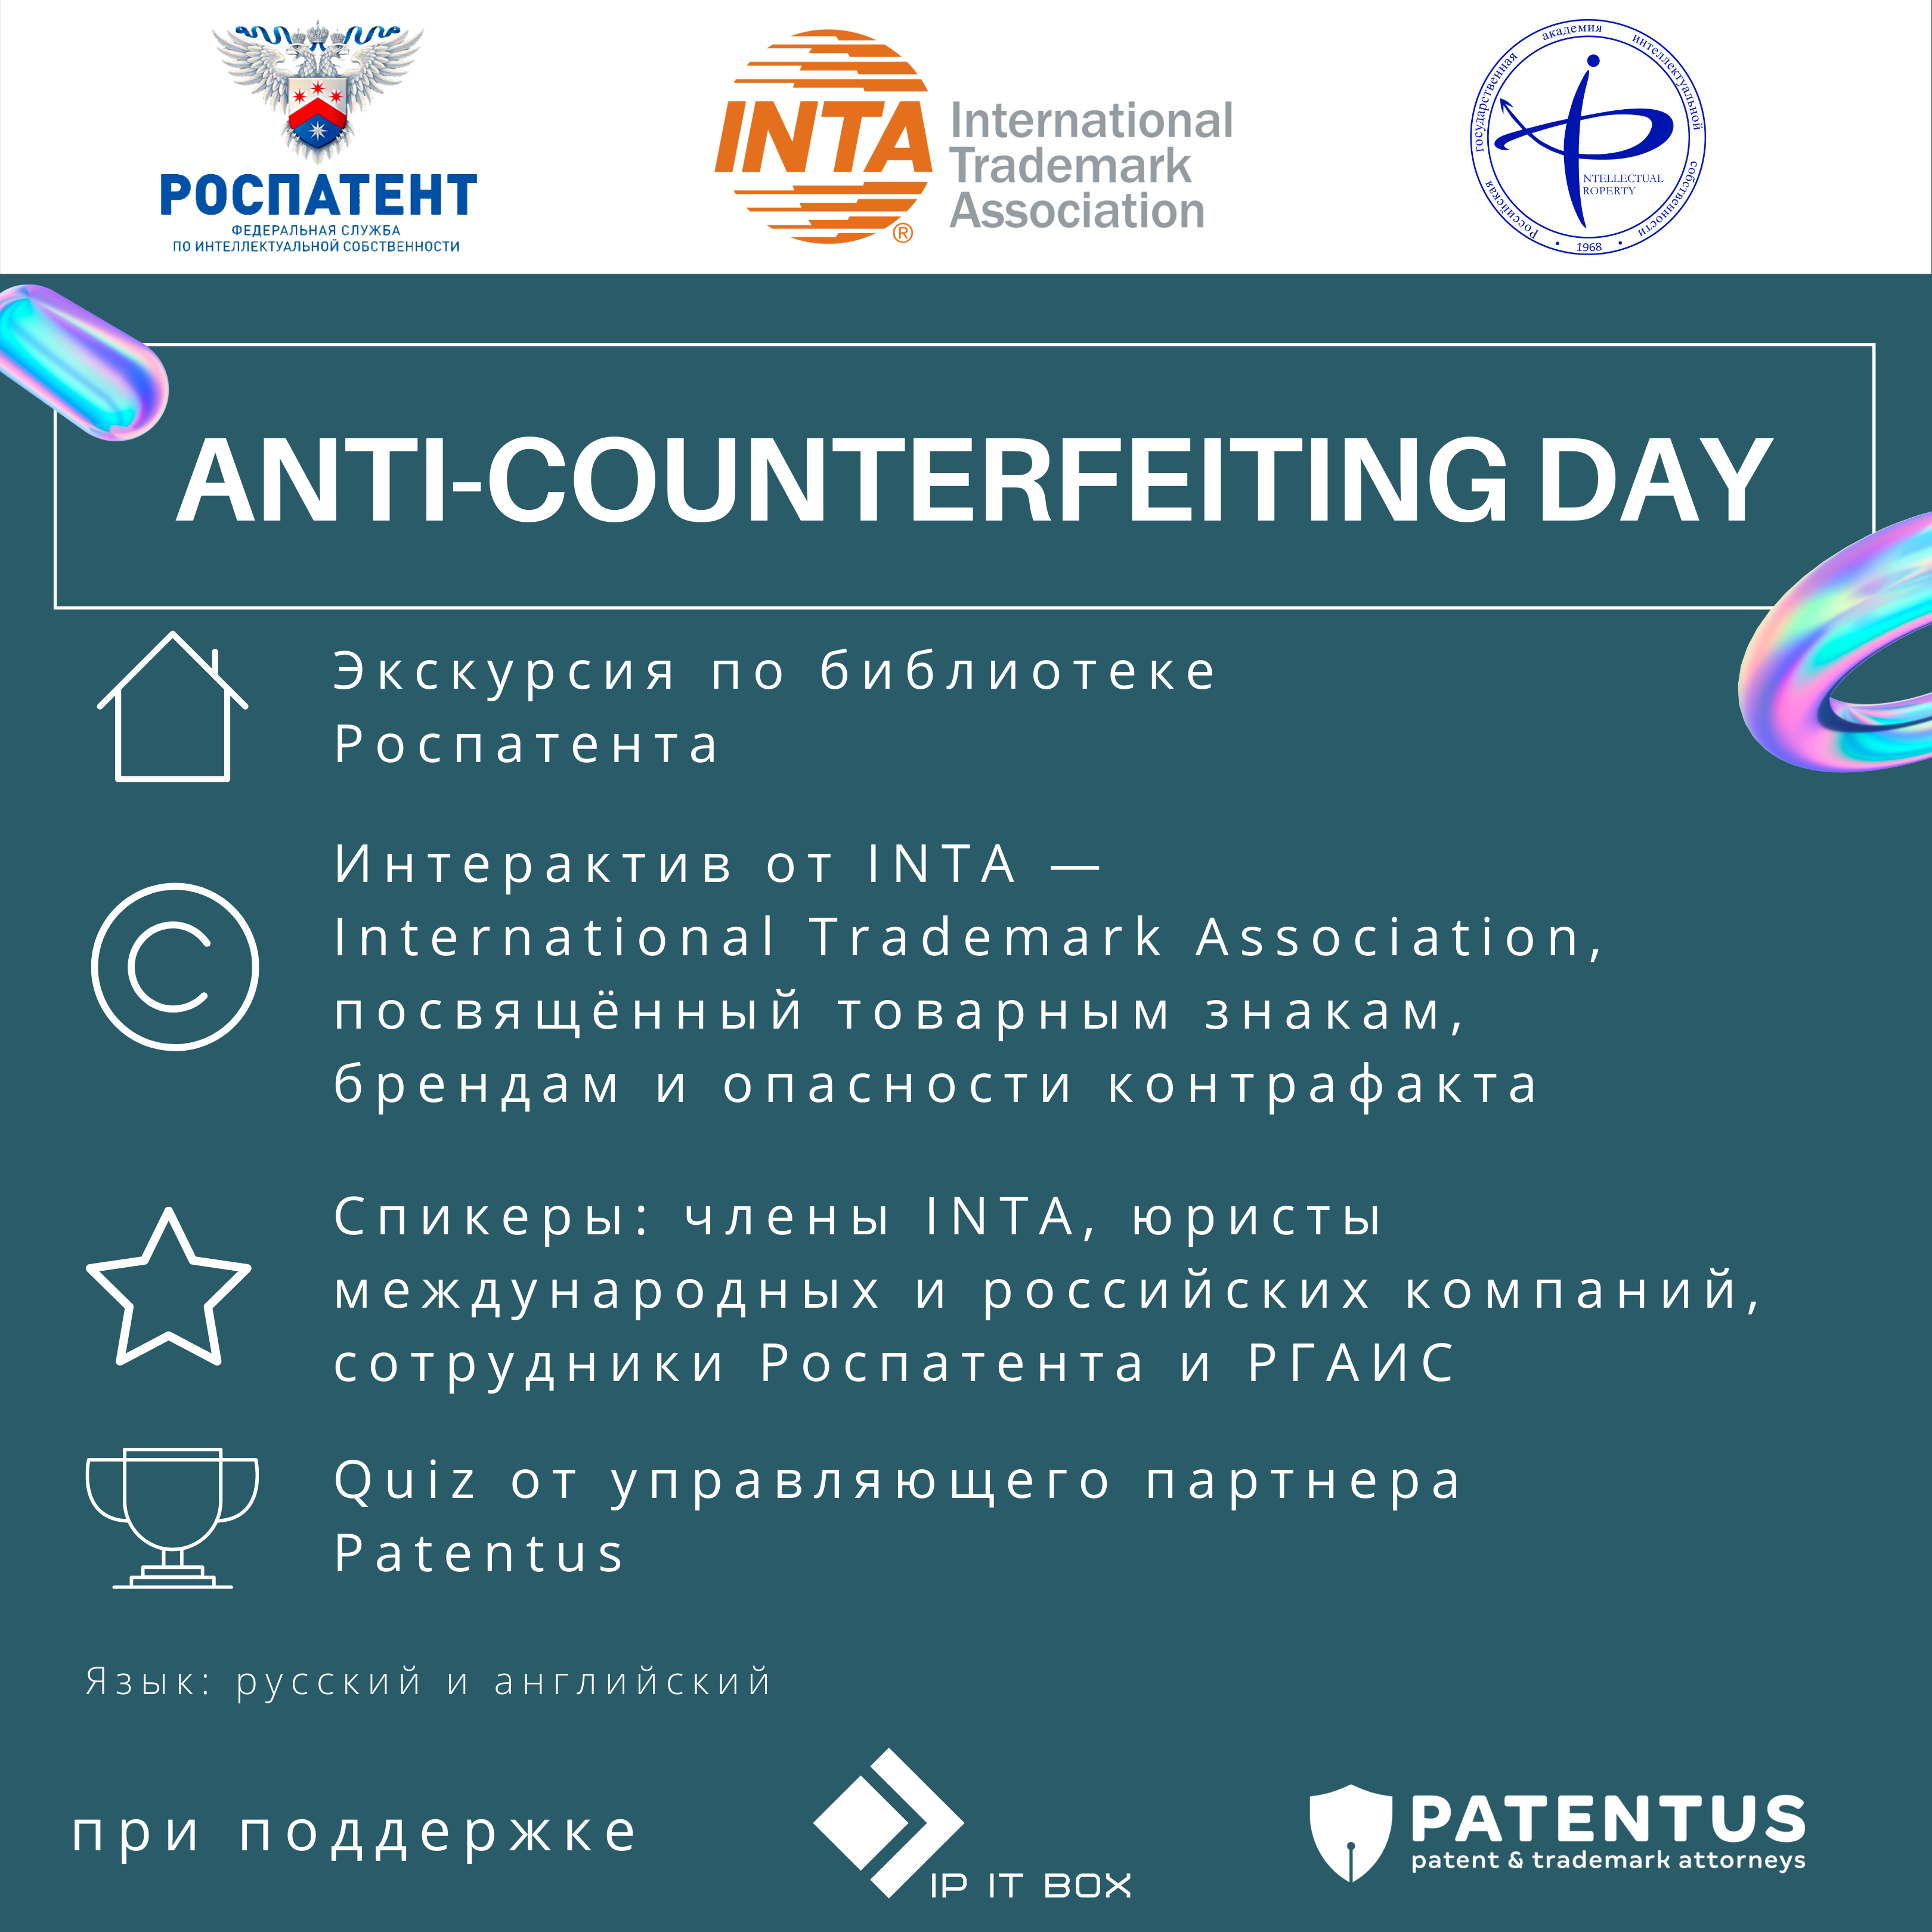 Встречаемся в Роспатенте: Международная ассоциация по товарным знакам INTA и PATENTUS ждут студентов 17 мая 2021 года